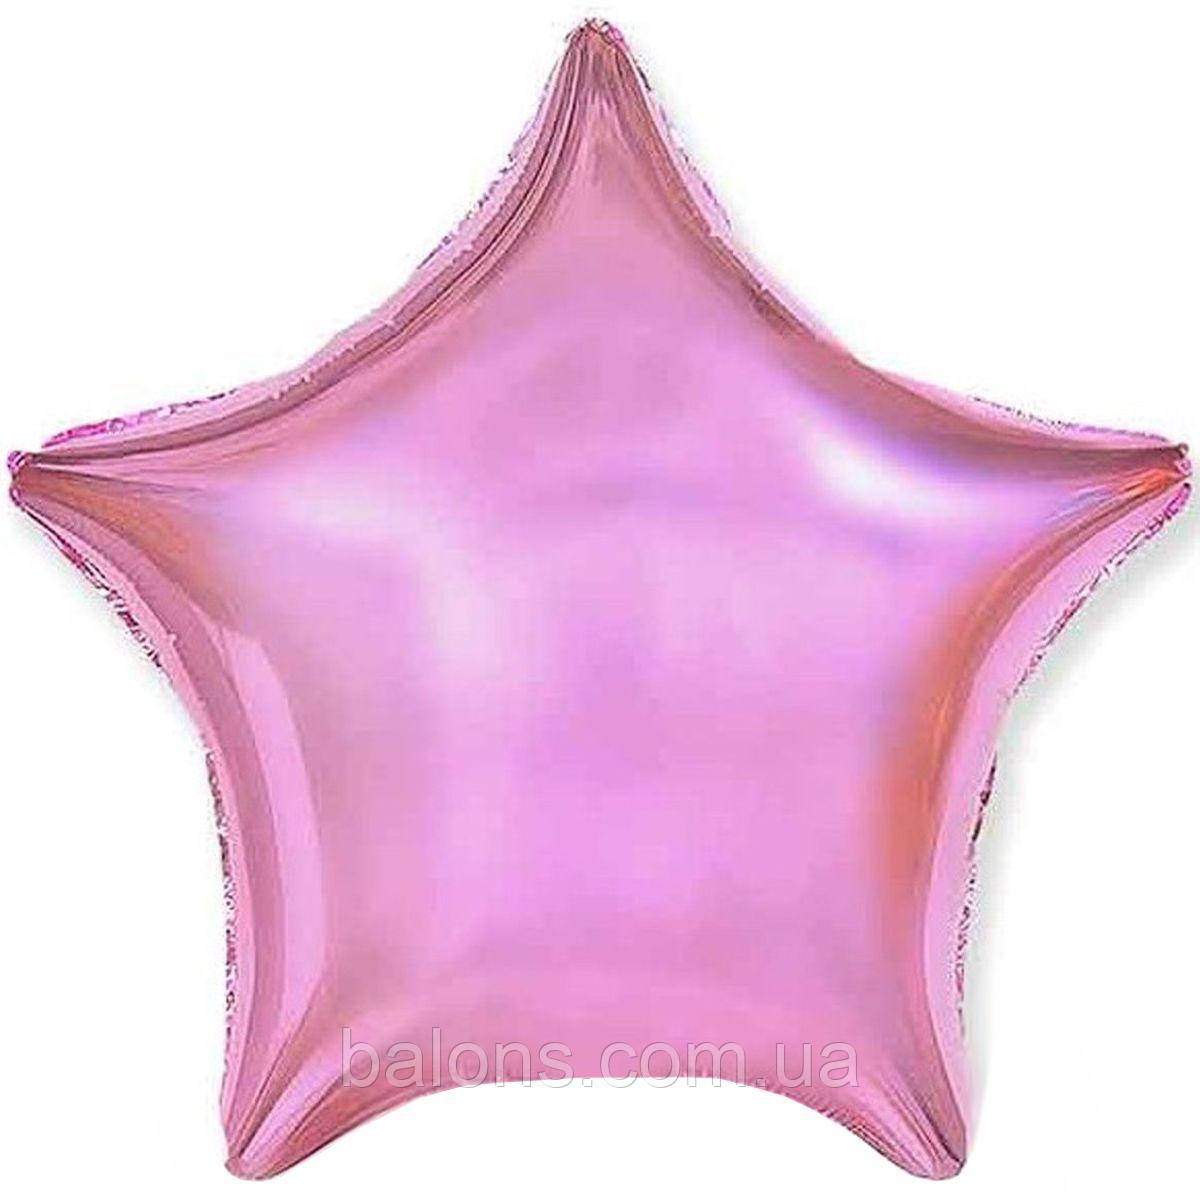 Зірка фольга металлік рожева 18 " - 45 см, Flexmetal